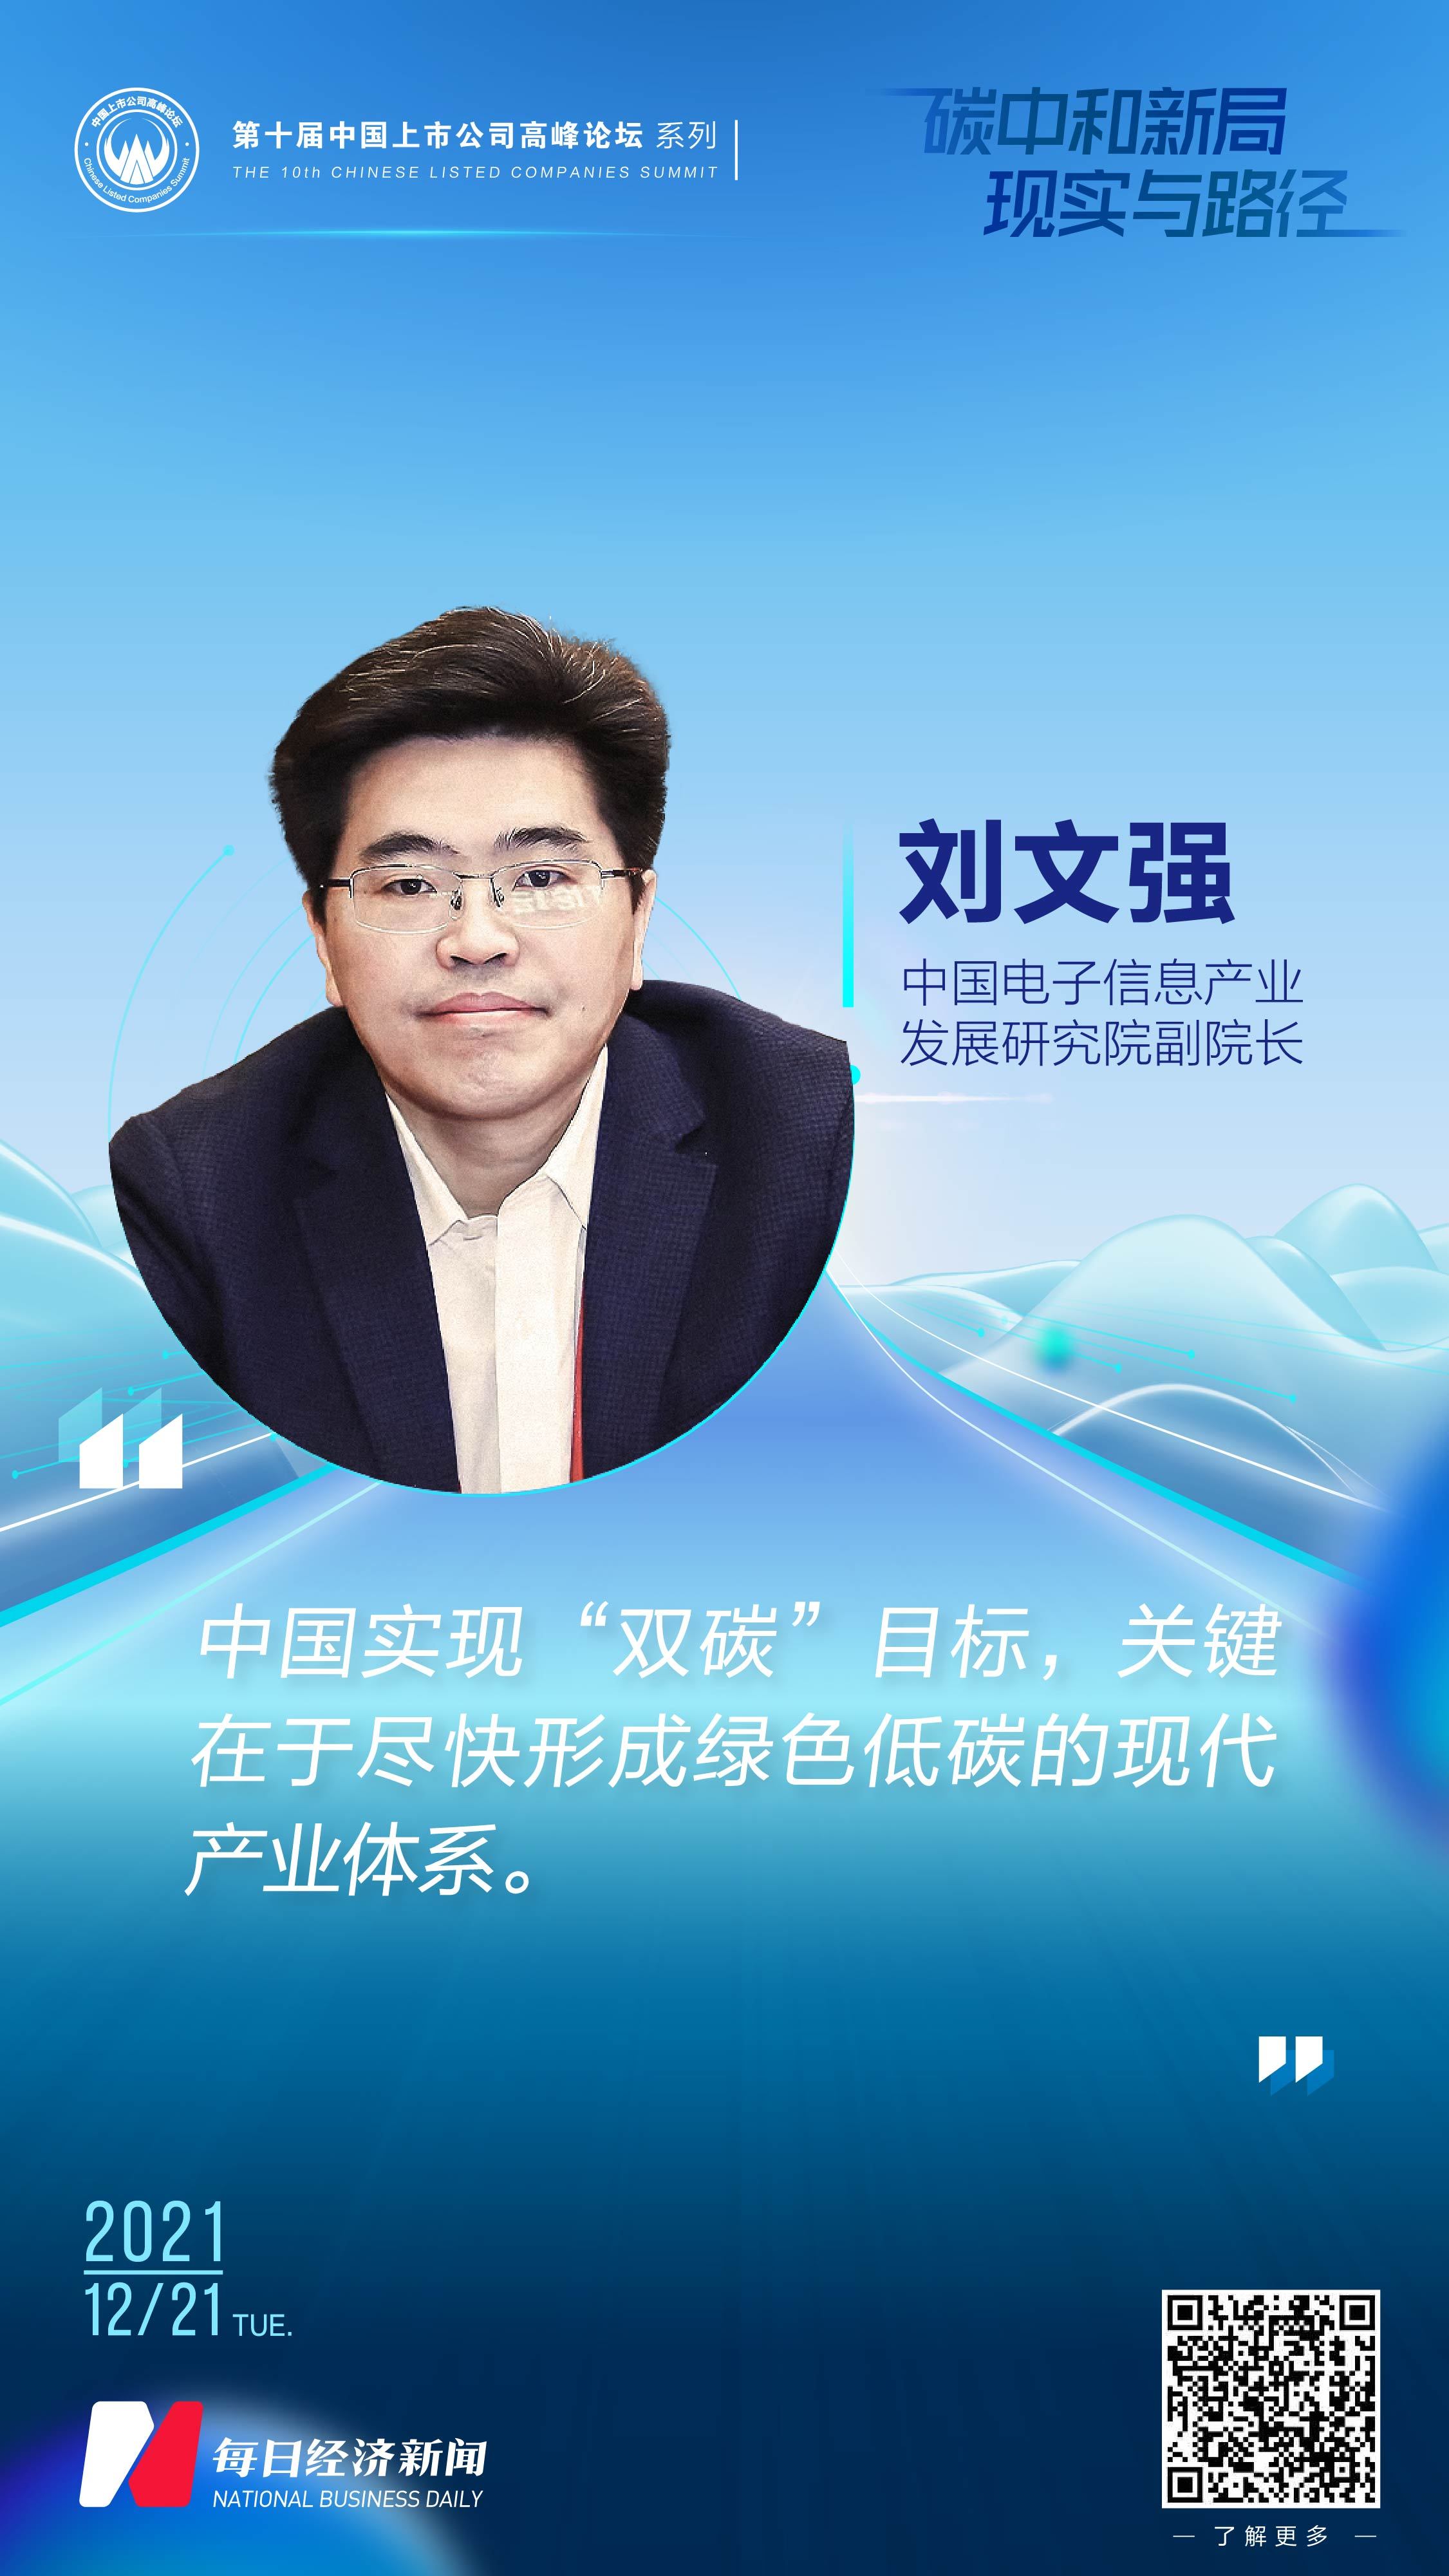 中国电子信息产业发展研究院副院长刘文强：实现“双碳”目标关键在于尽快形成绿色低碳的现代产业体系